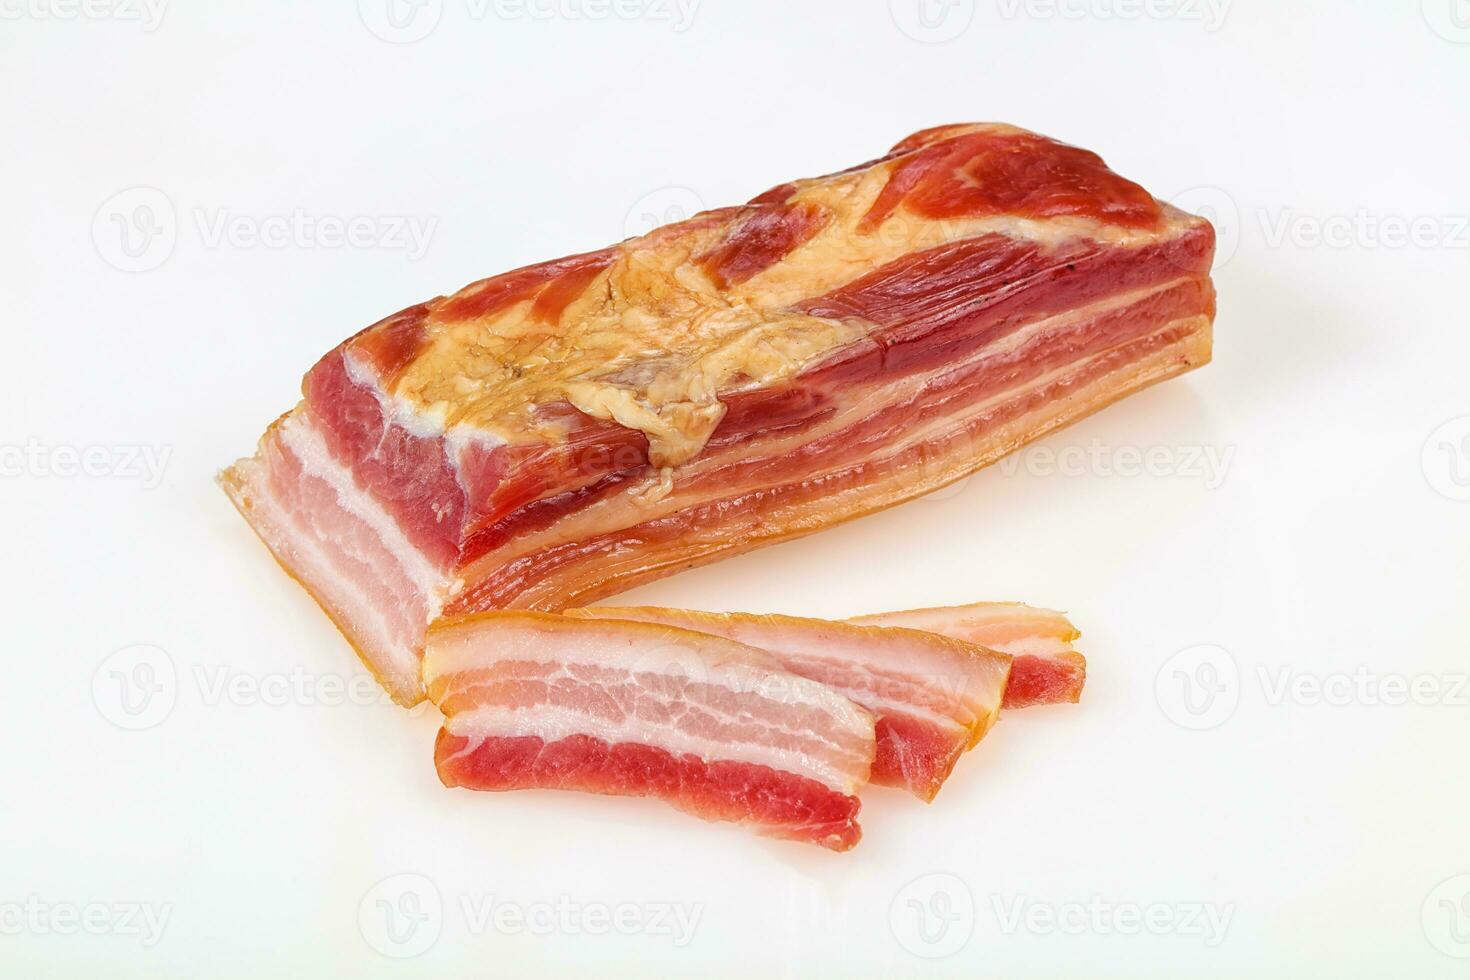 gerookt varkensvlees op witte achtergrond foto